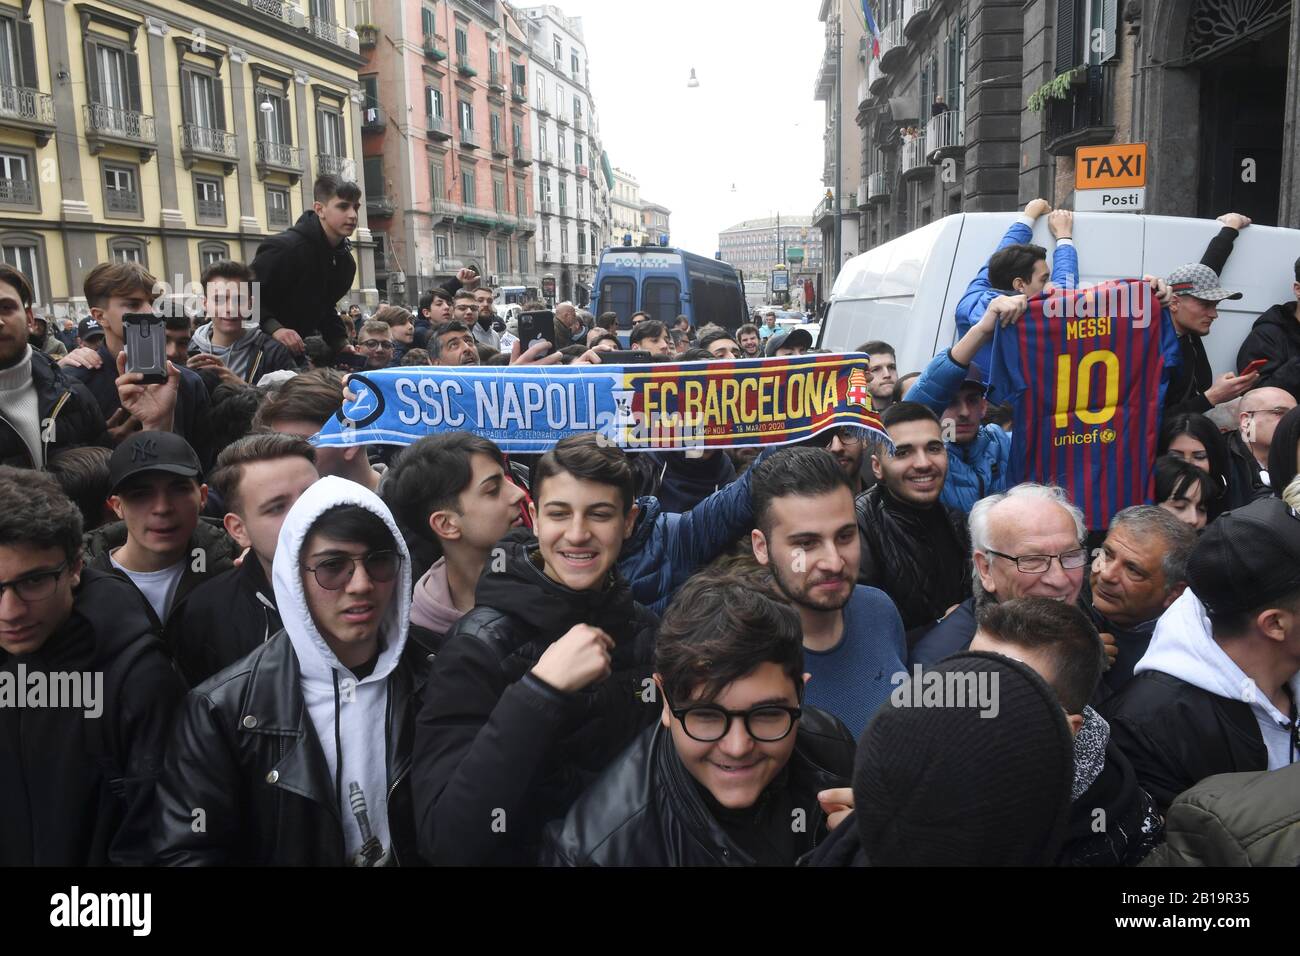 La squadra di calcio di Barcellona arriva a Napoli per giocare nel gioco UEFA Champions League contro Napoli, un gruppo di ragazzi e tifosi attendono l'arrivo dei giocatori 24/902/2020, Napoli, Italia Foto Stock